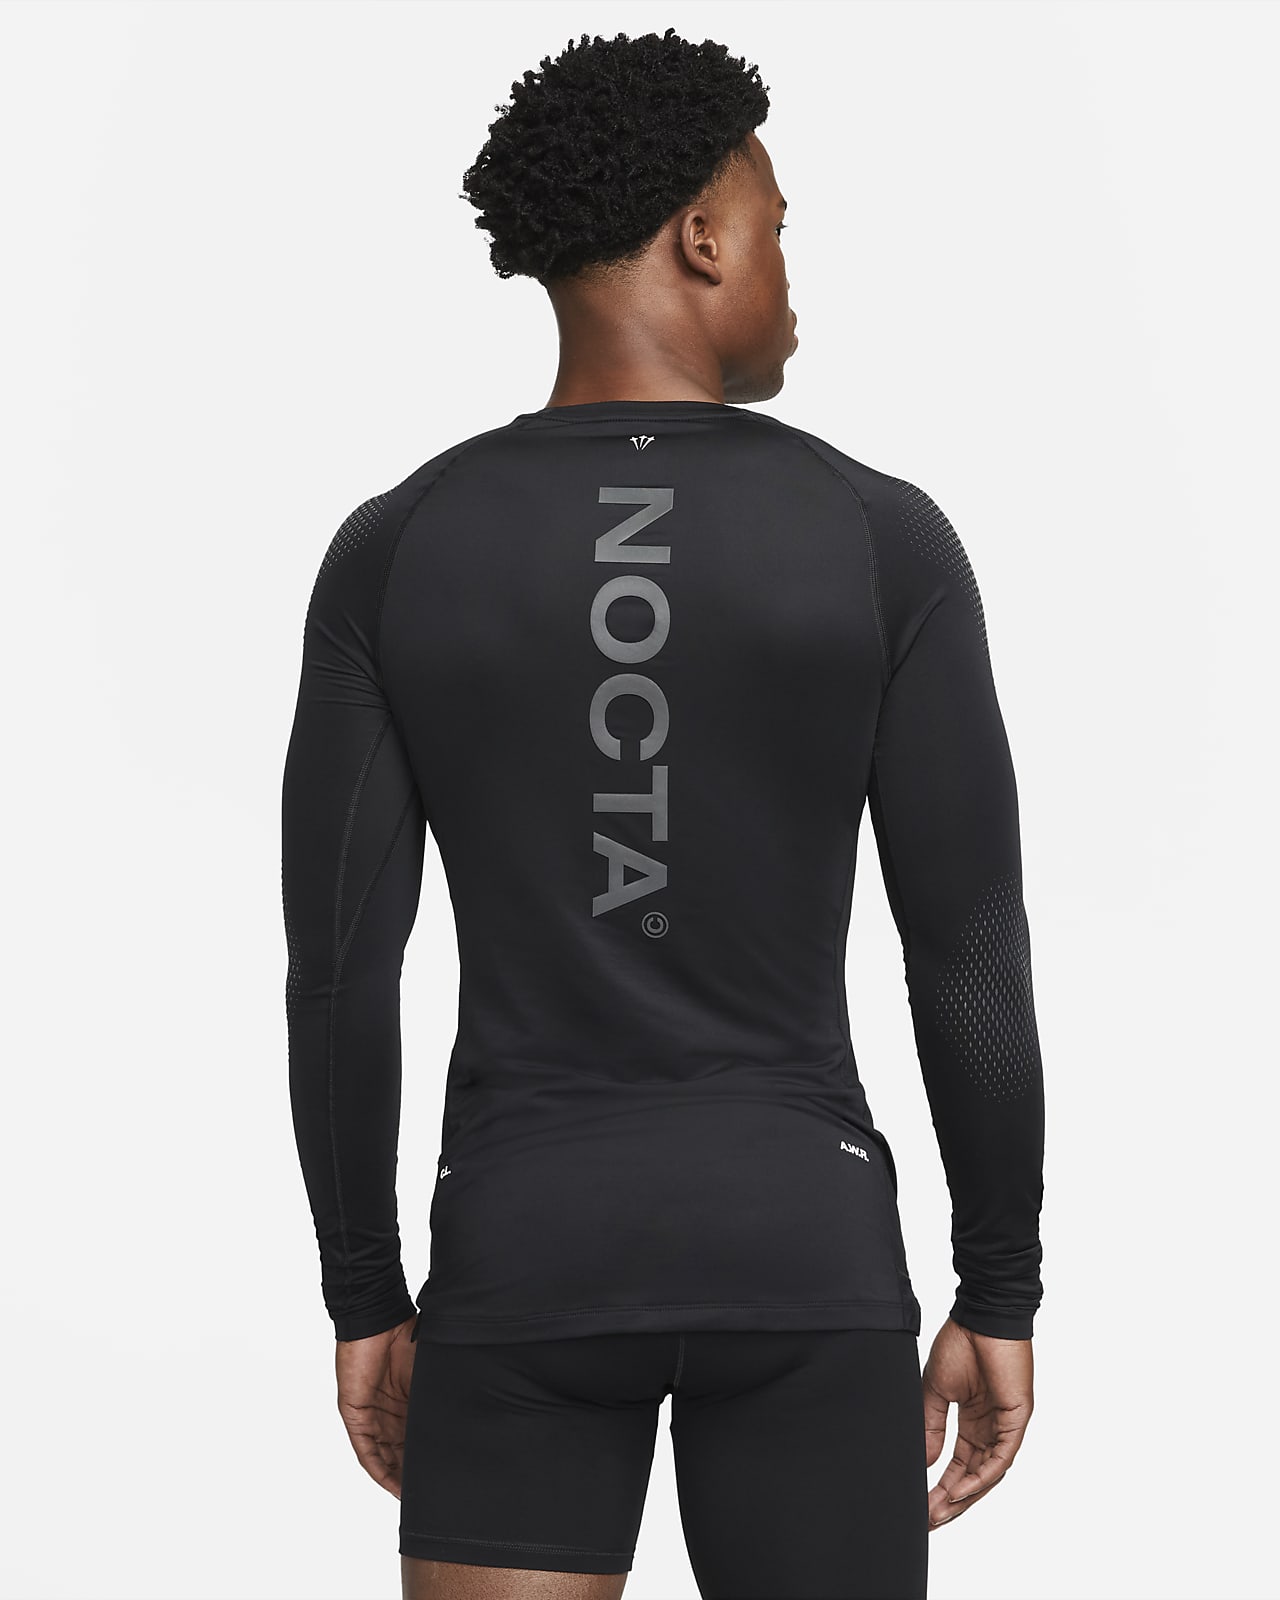 Capa base de básquetbol manga larga hombre NOCTA. Nike.com